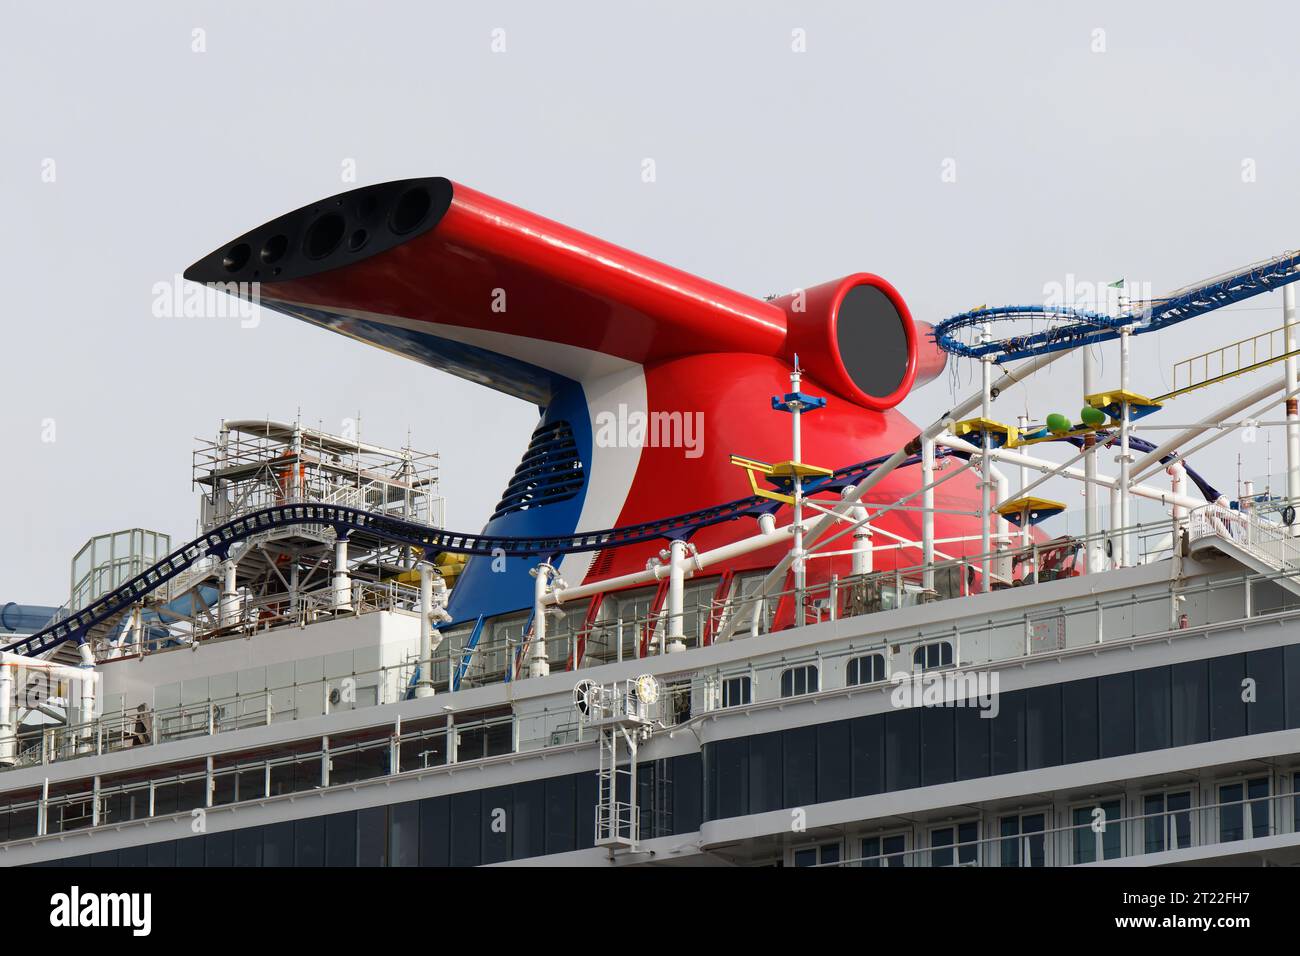 Das neue Kreuzfahrtschiff Karneval Jubilee liegt am 7. Oktober 2023 vor der Meyer Werft in Papenburg. Stockfoto